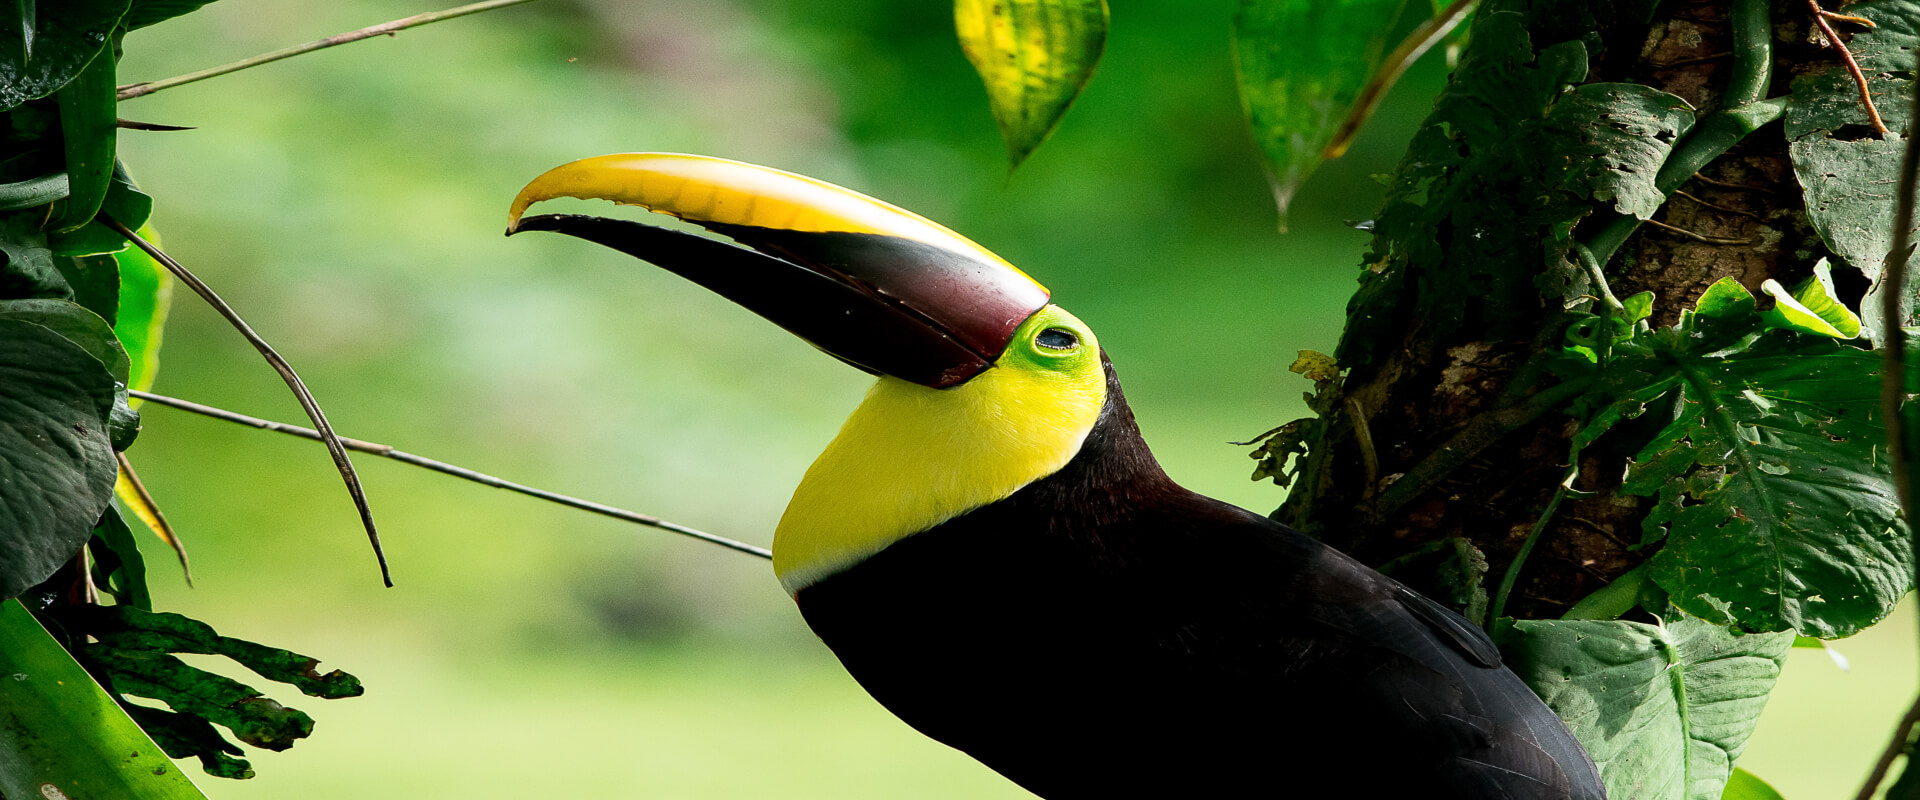 Drake Bay Bird Watching Tour | Costa Rica Jade Tours